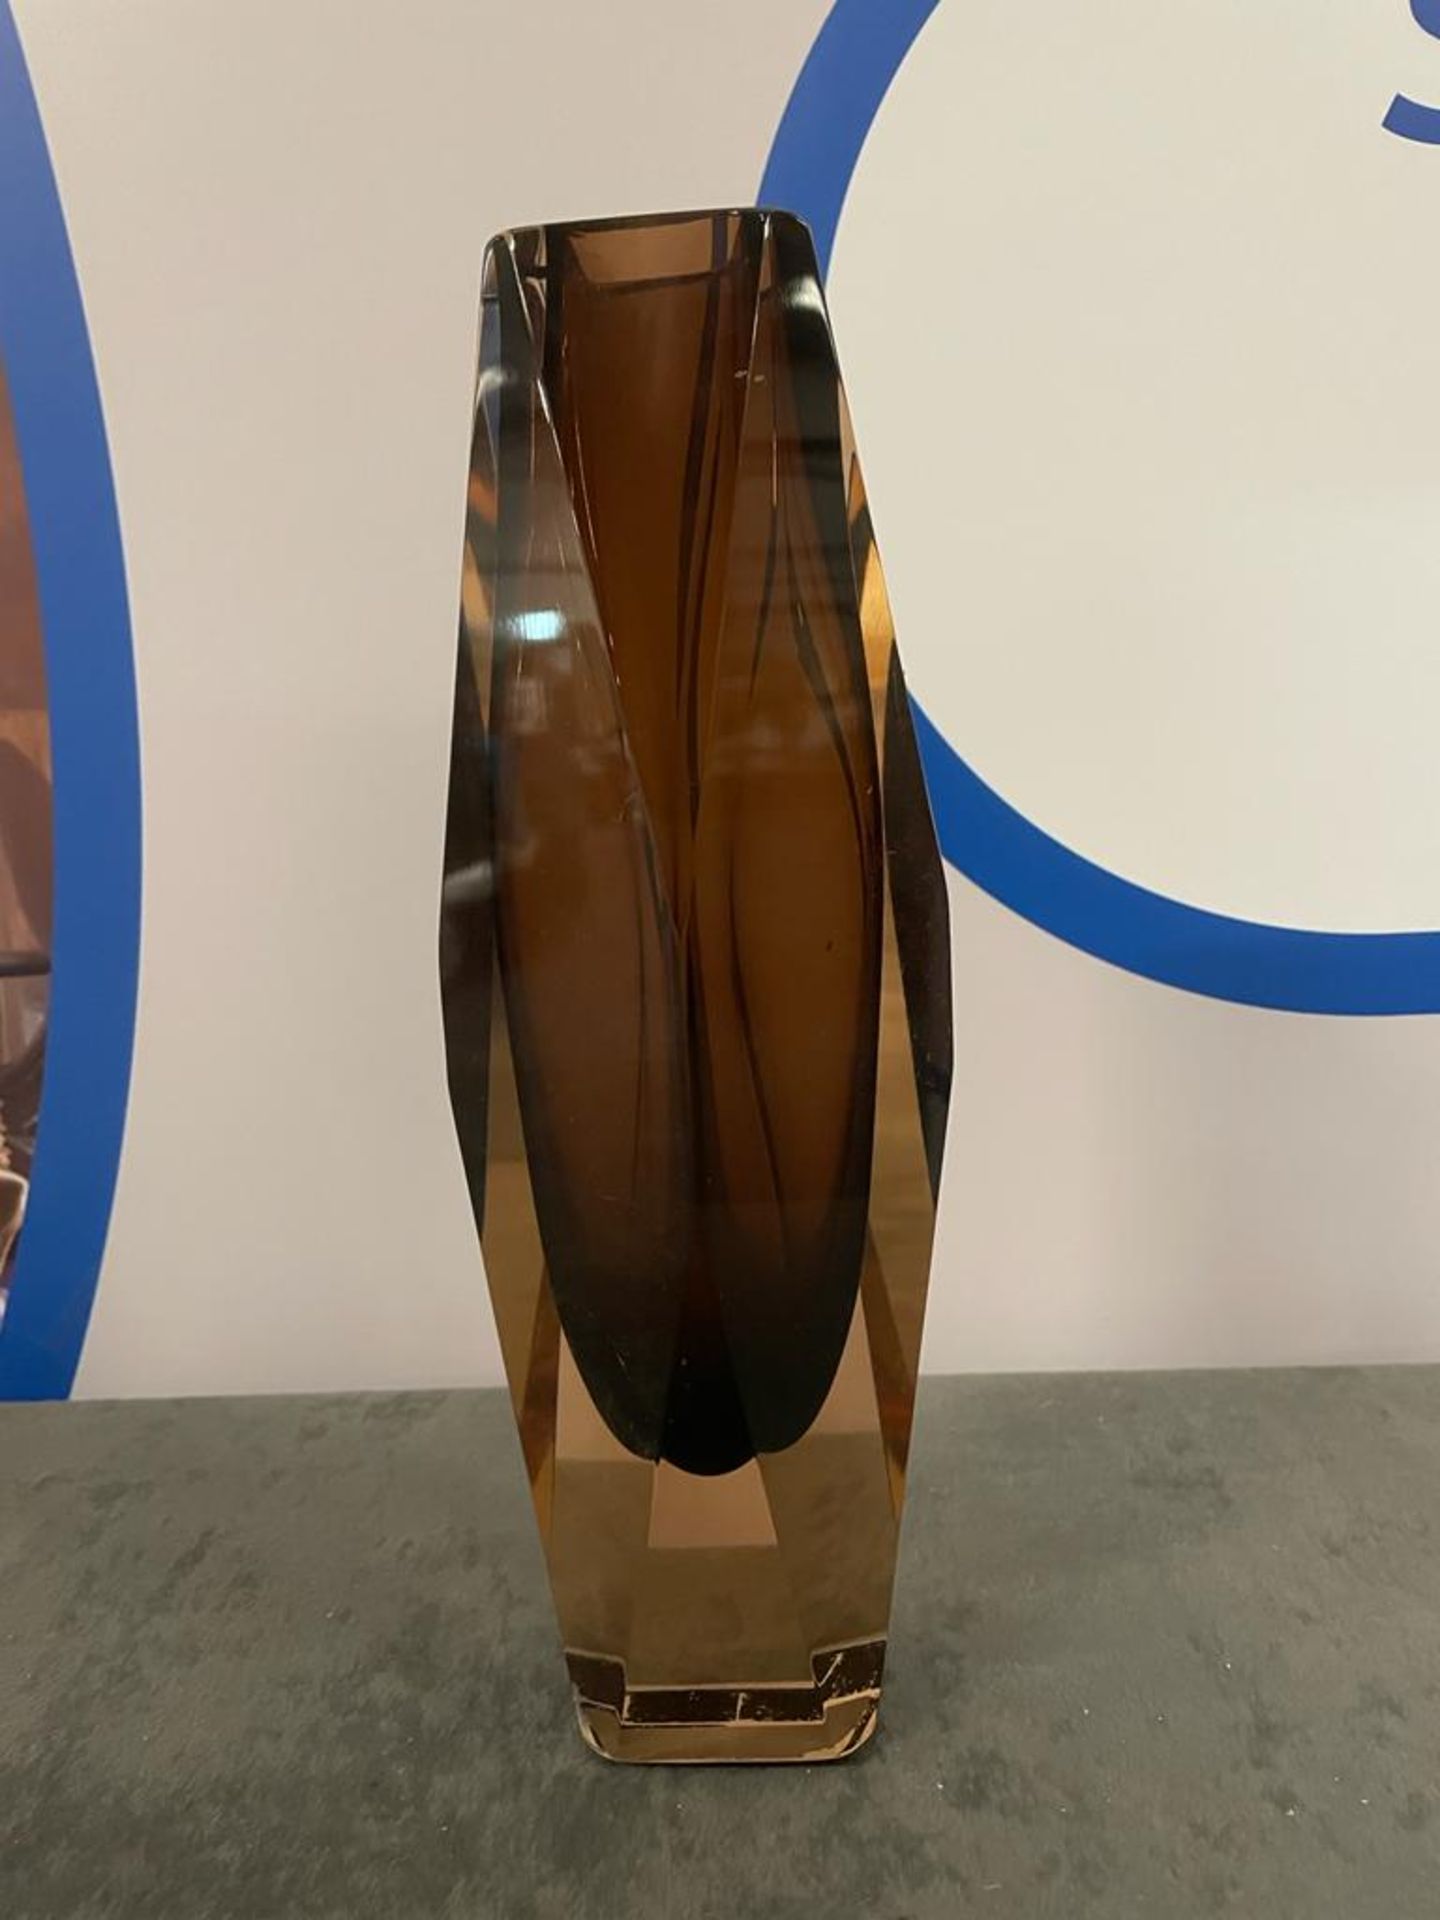 A Textured Brown Glass Vase 31 Cm High ( CP1272) - Bild 2 aus 3